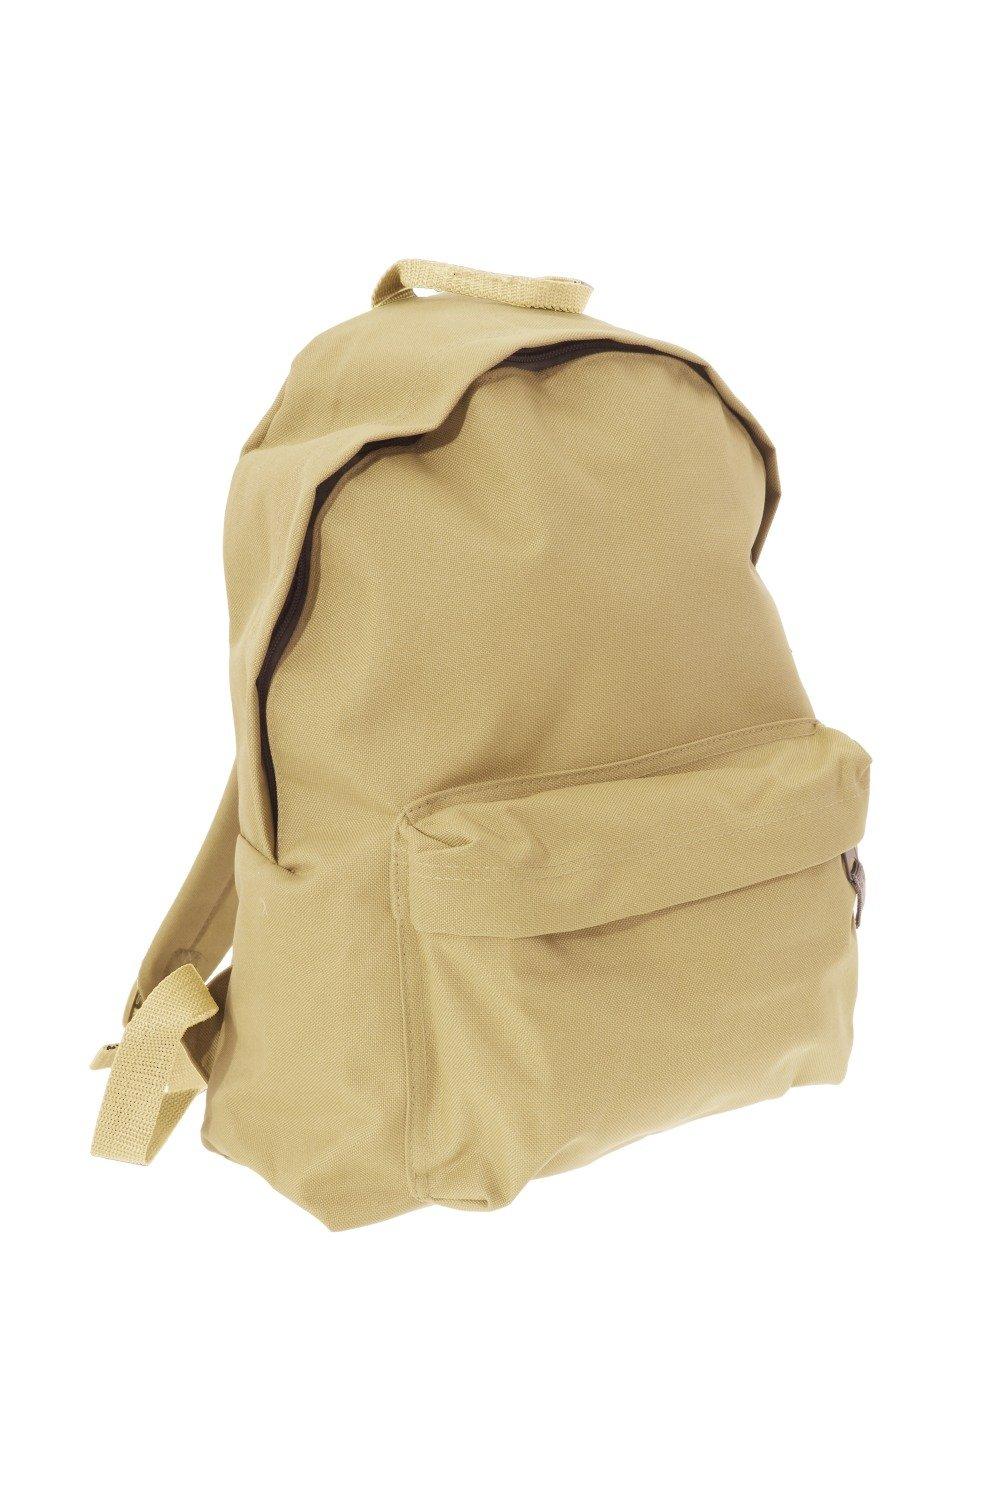 Модный рюкзак / рюкзак (18 литров) Bagbase, коричневый